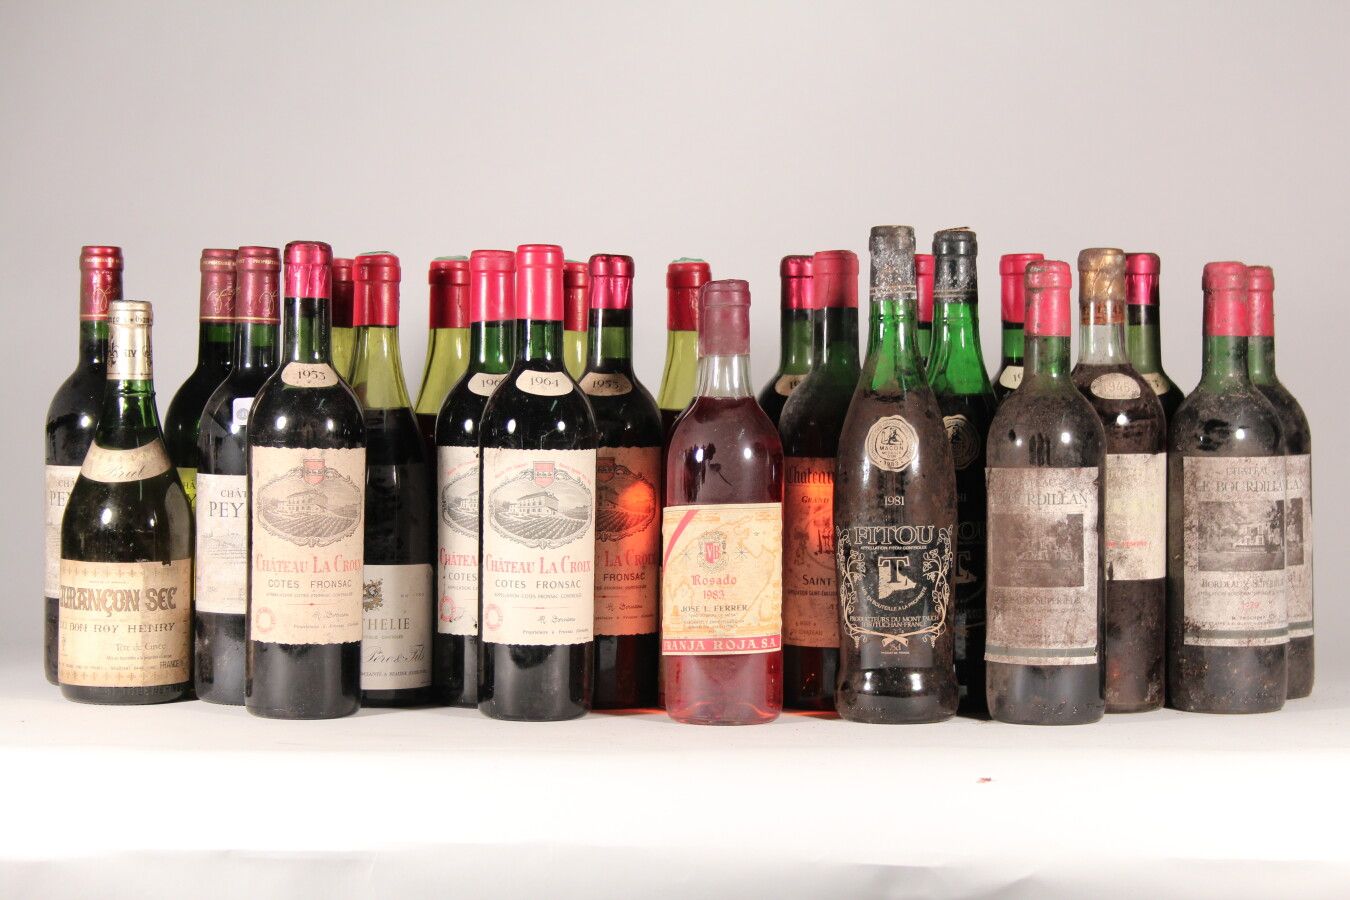 Null 1967 - Monthelie

Chanson Pére & Fils - 5 bottles 

NC - Jurançon dry - 1 b&hellip;